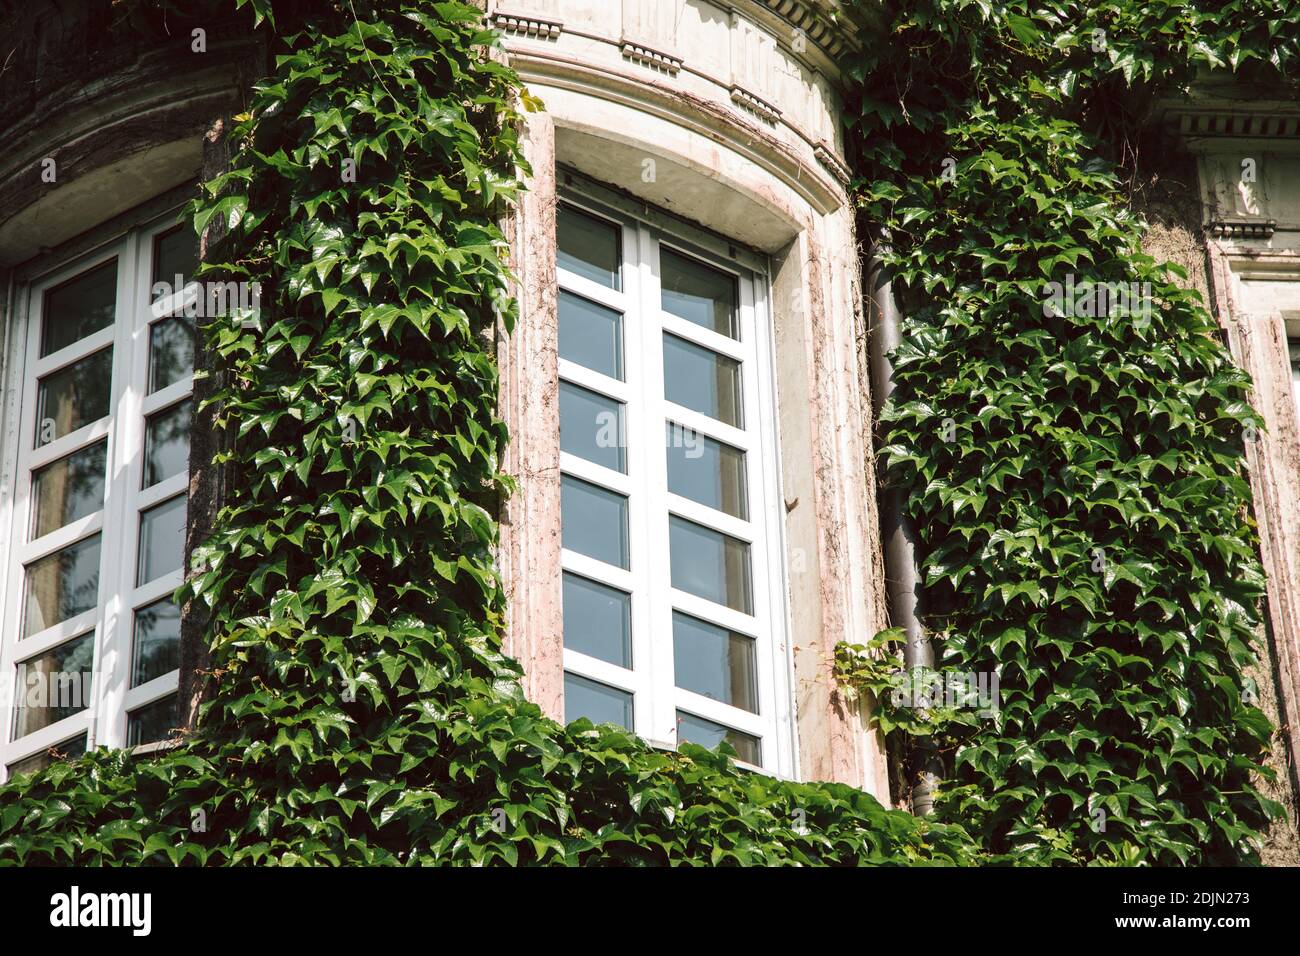 Haus mit bewachsener Fassade in Altena, Märkischer Kreis, North Rhine-Westphalia, Germany Stock Photo